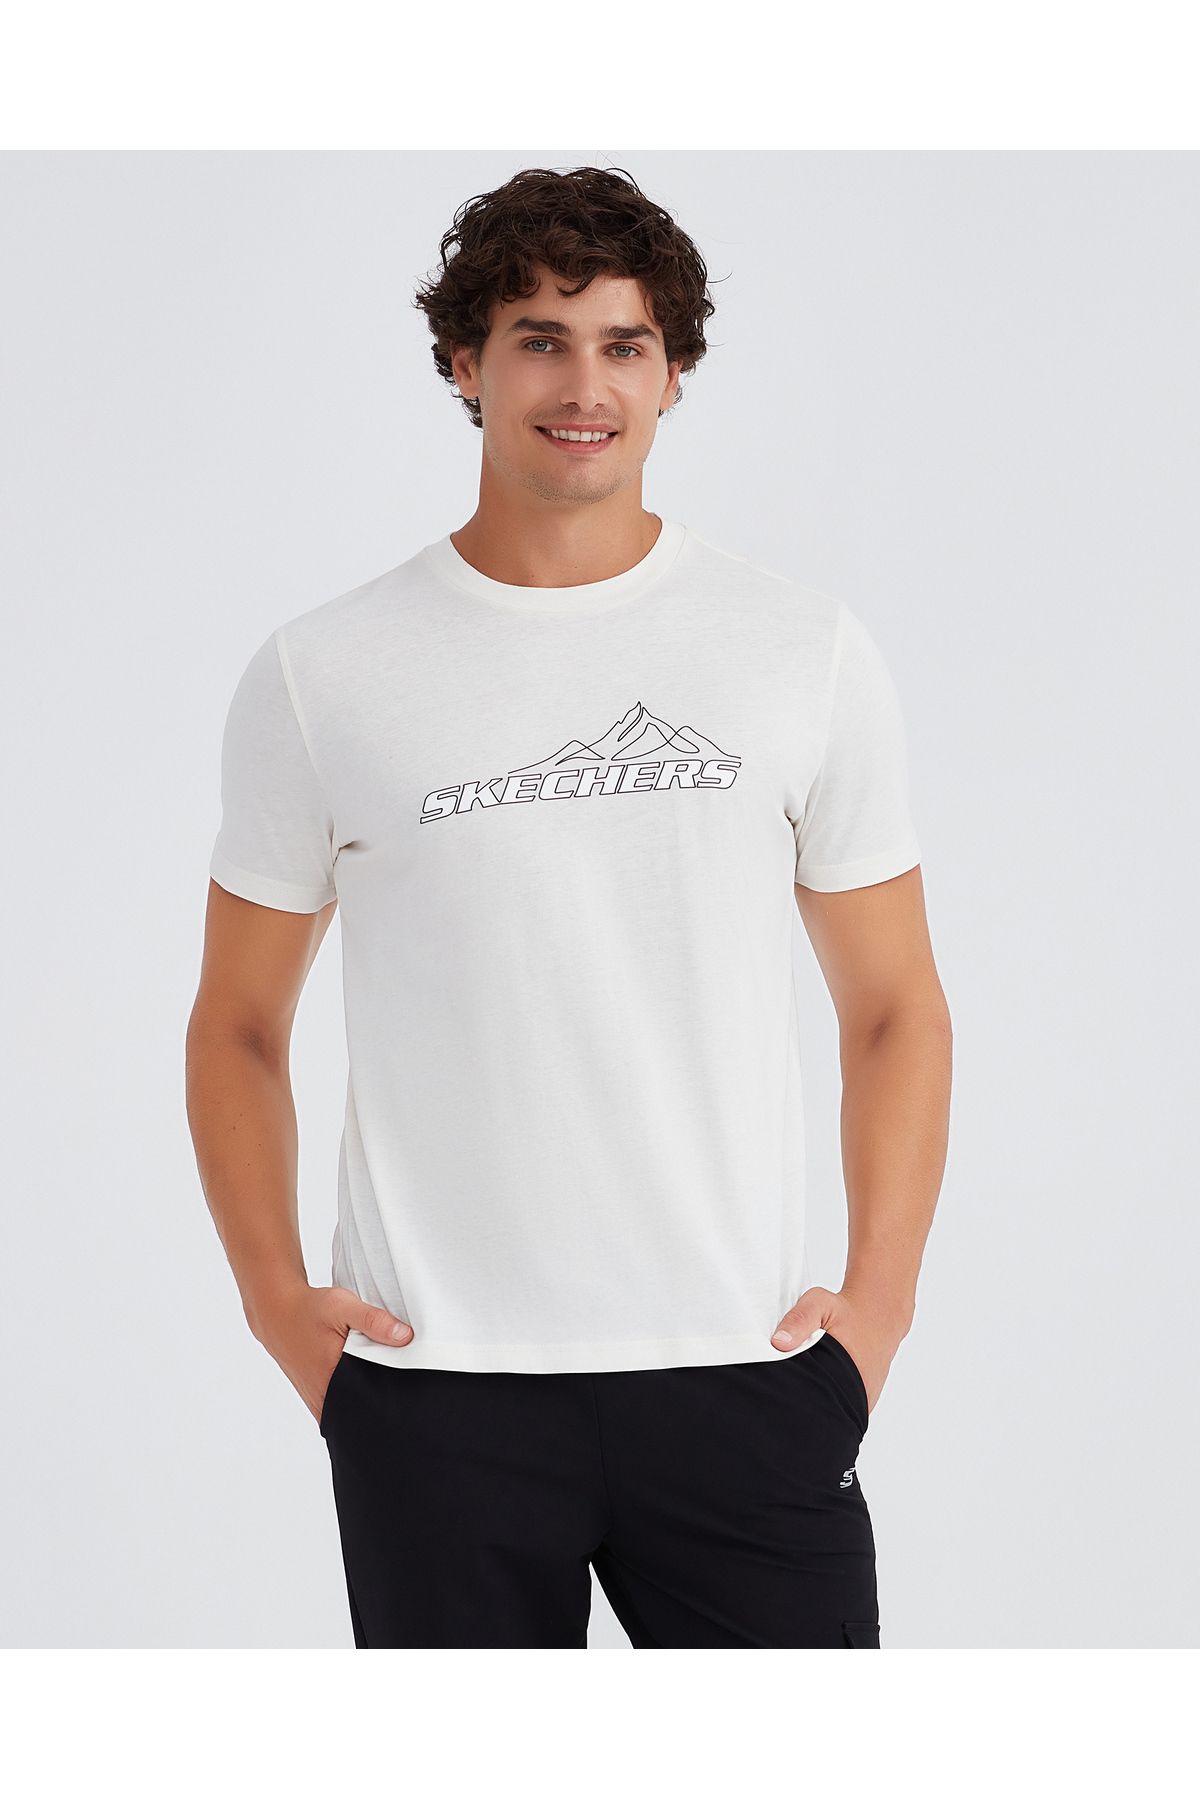 Skechers M Graphic Tee Crew Neck T-shirt Erkek Beyaz Tshirt S232436-100